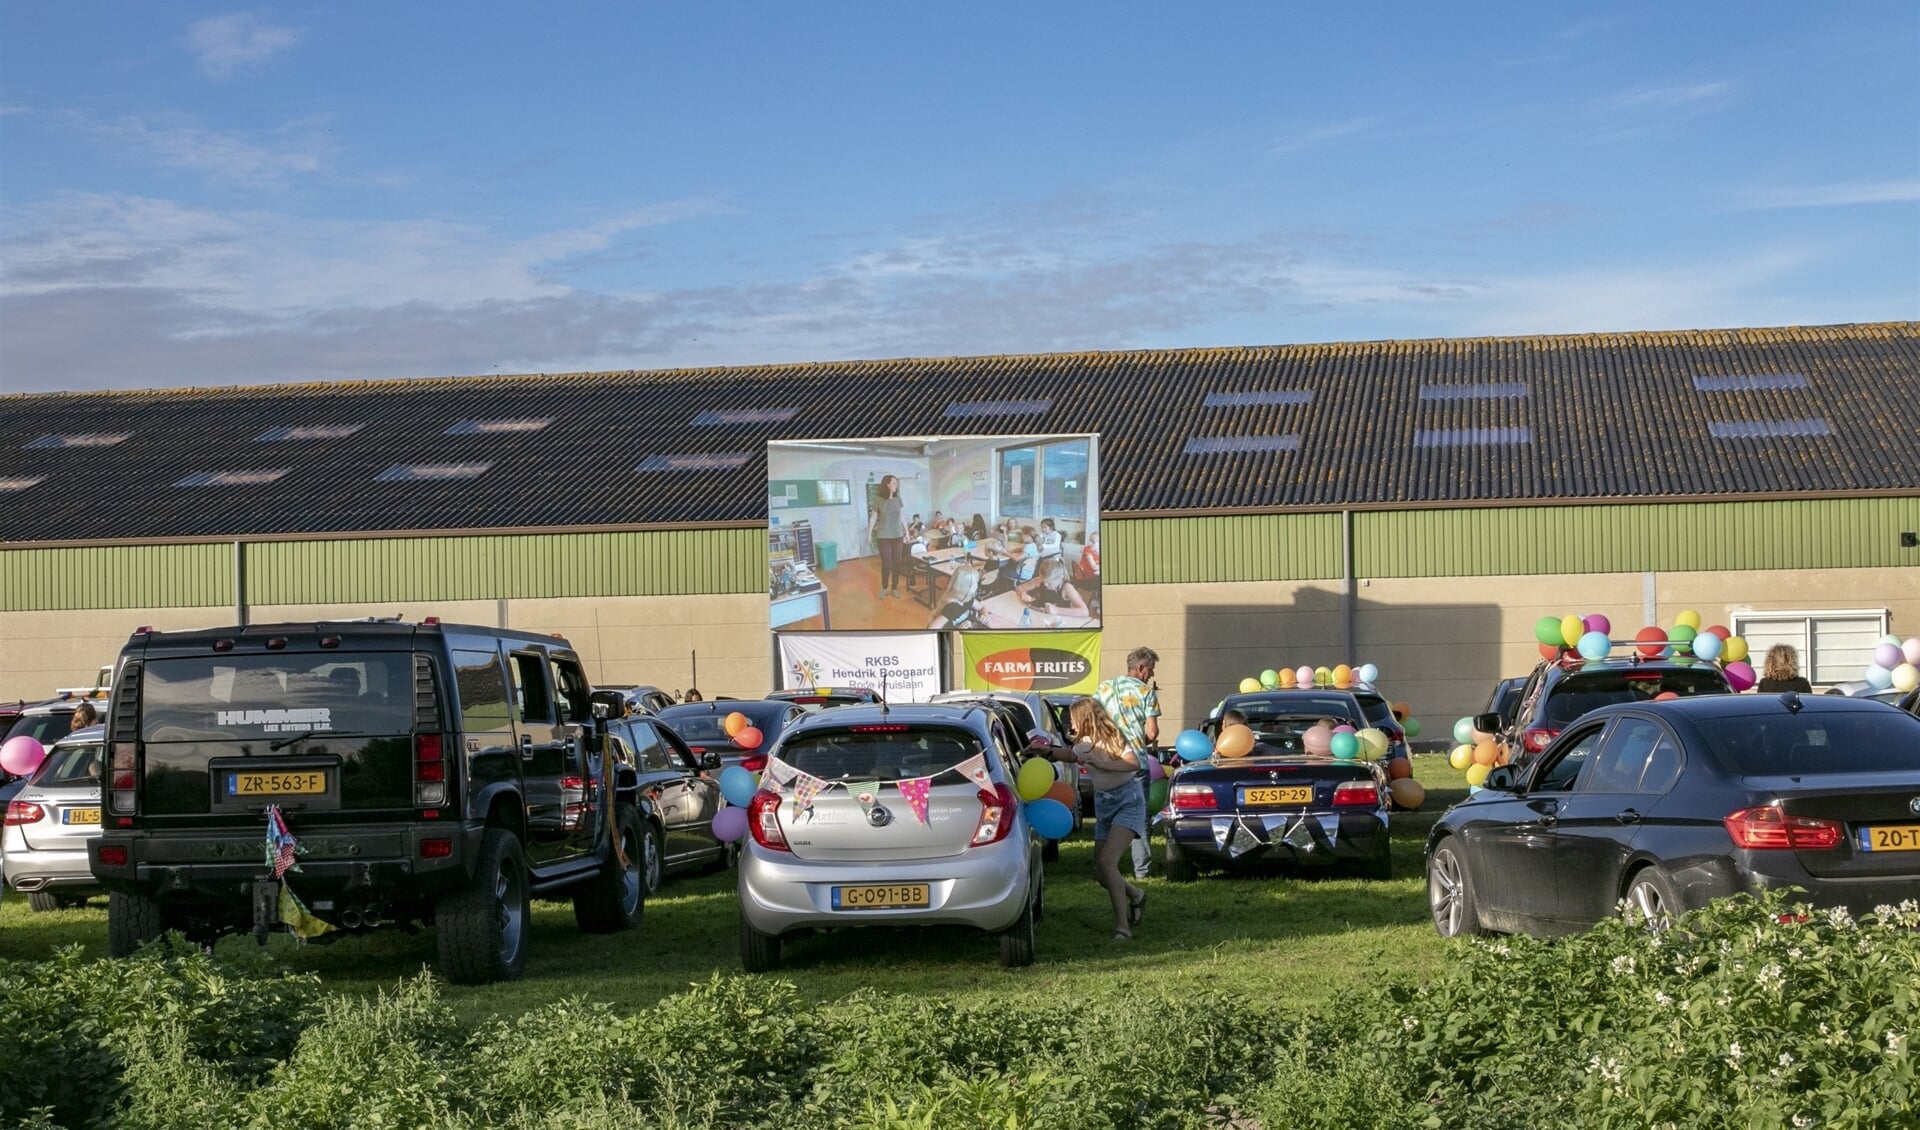 In samenwerking met Farm Frites mocht de school een grasveld gebruiken aan de Molendijk voor een heuse drive in bioscoop